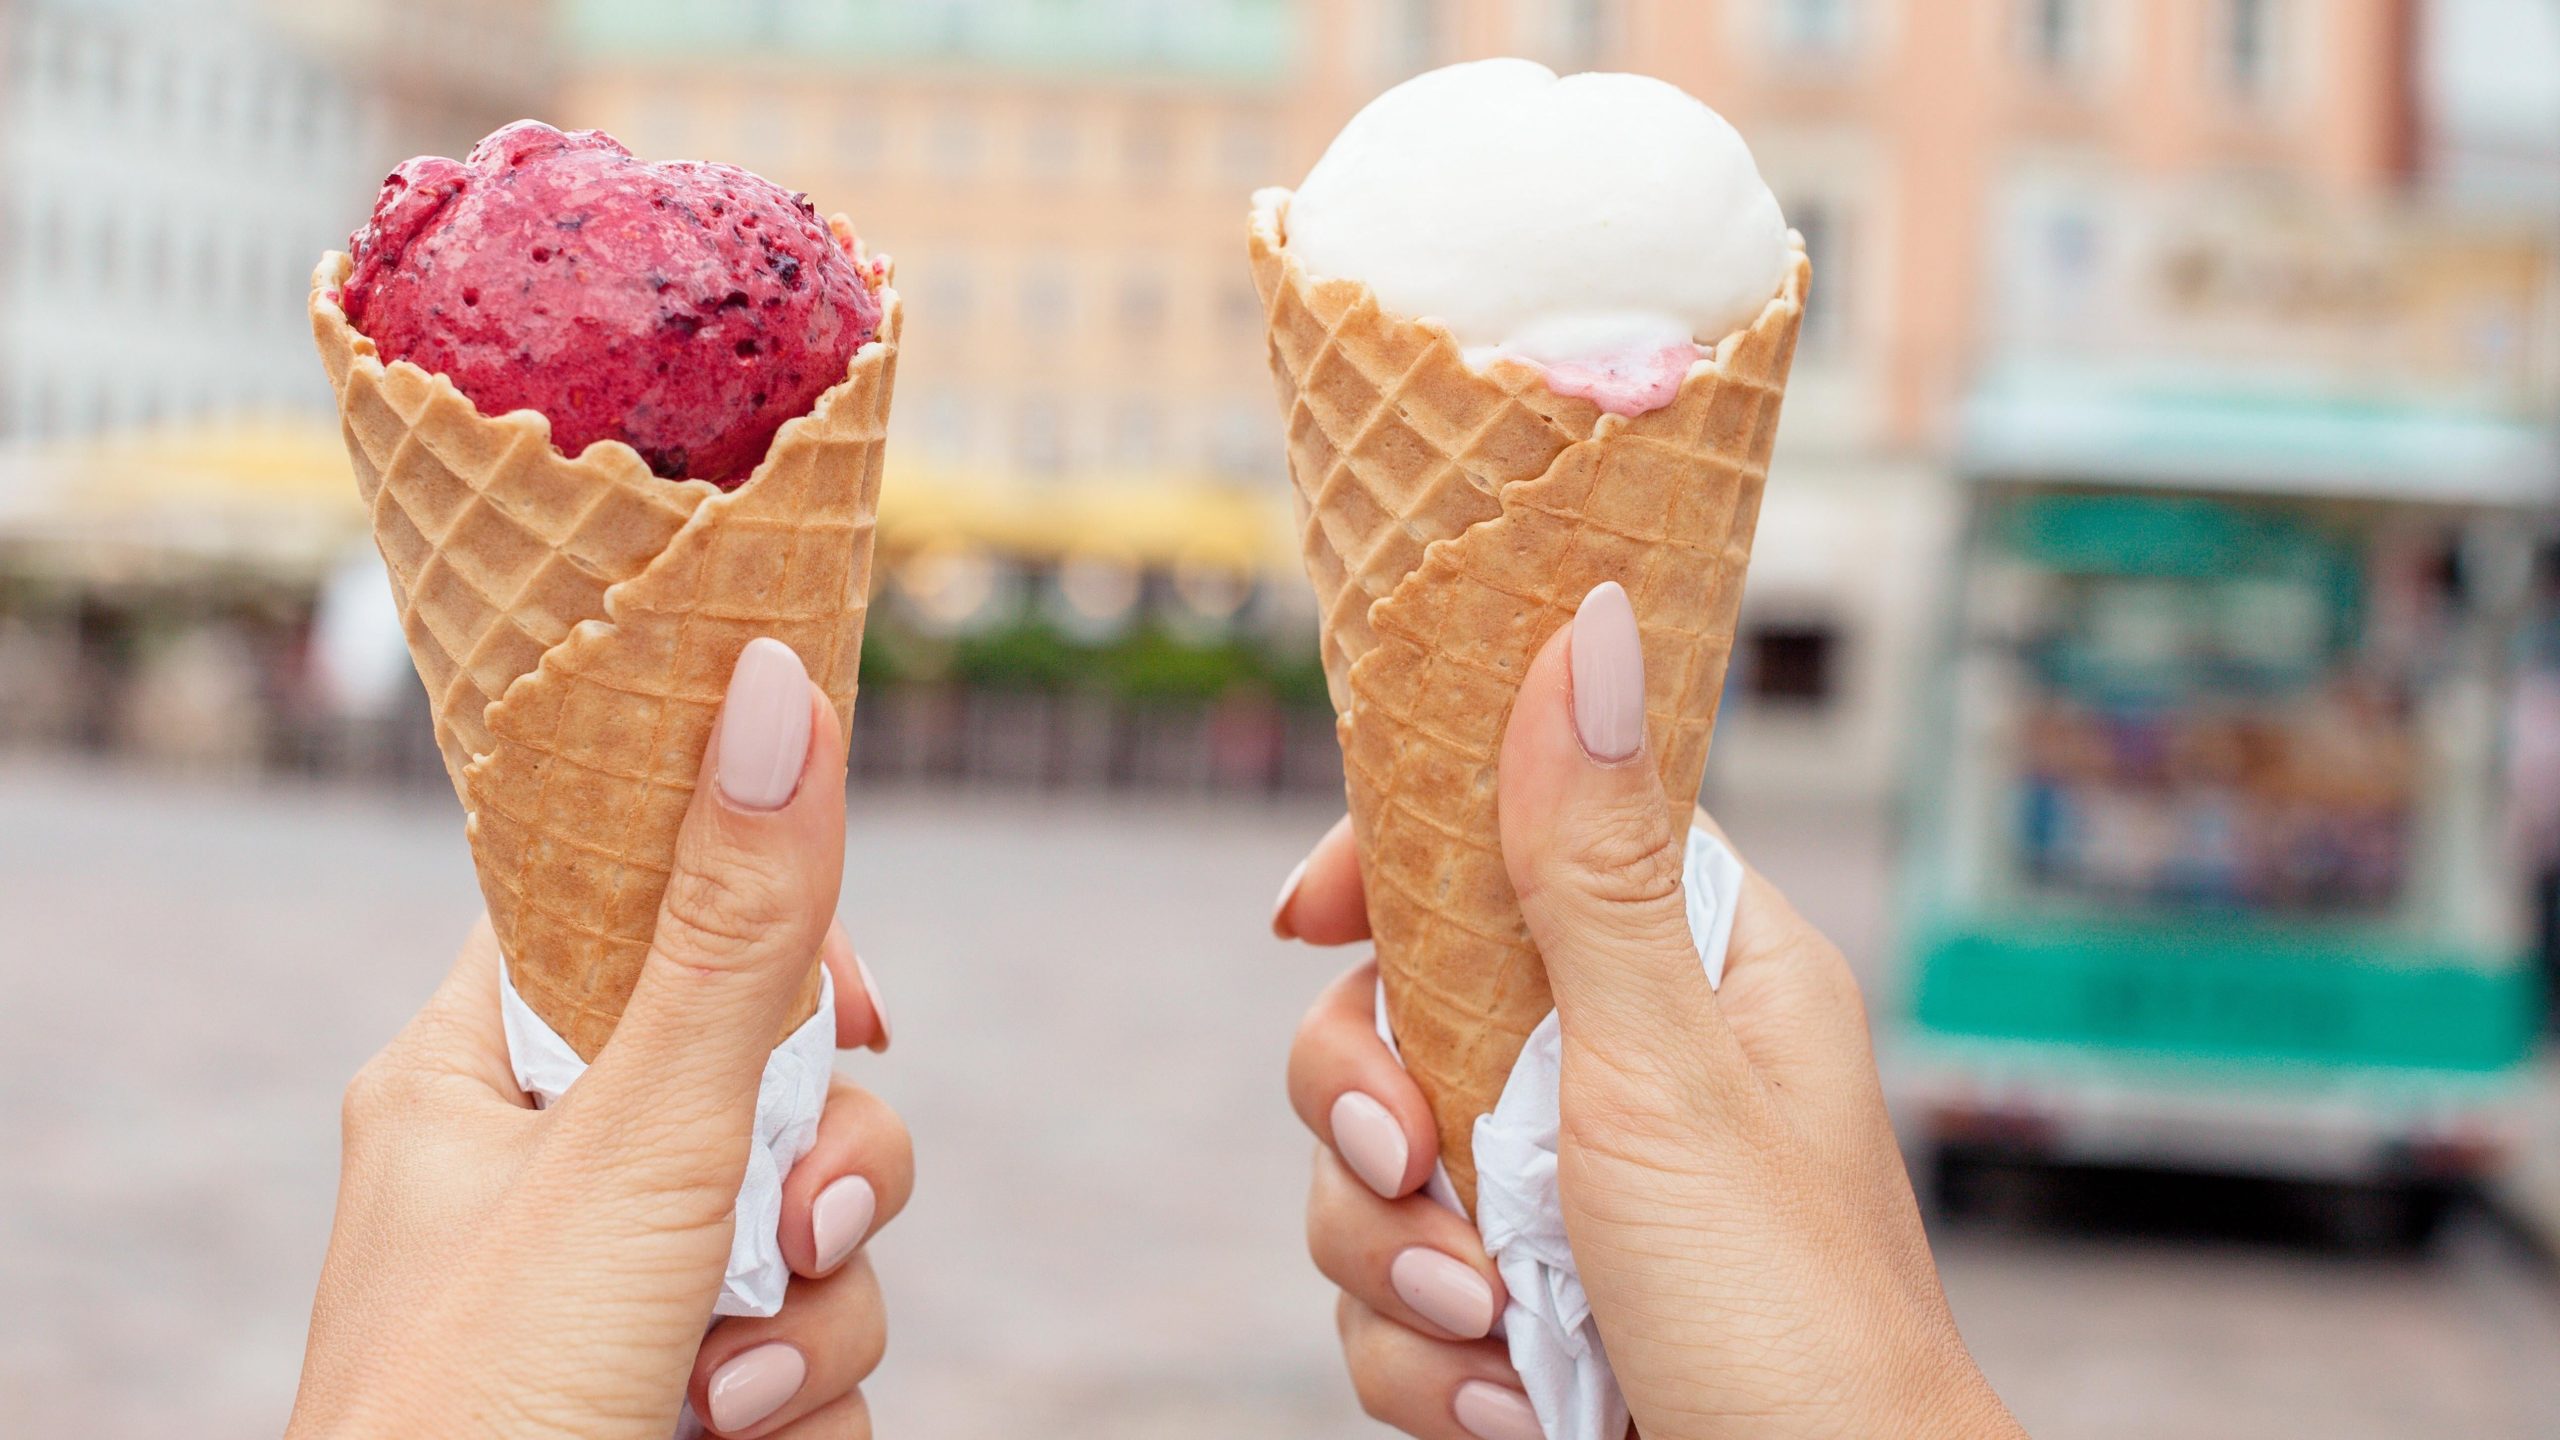 当热得像球一样的时候，最好的无搅拌冰淇淋食谱